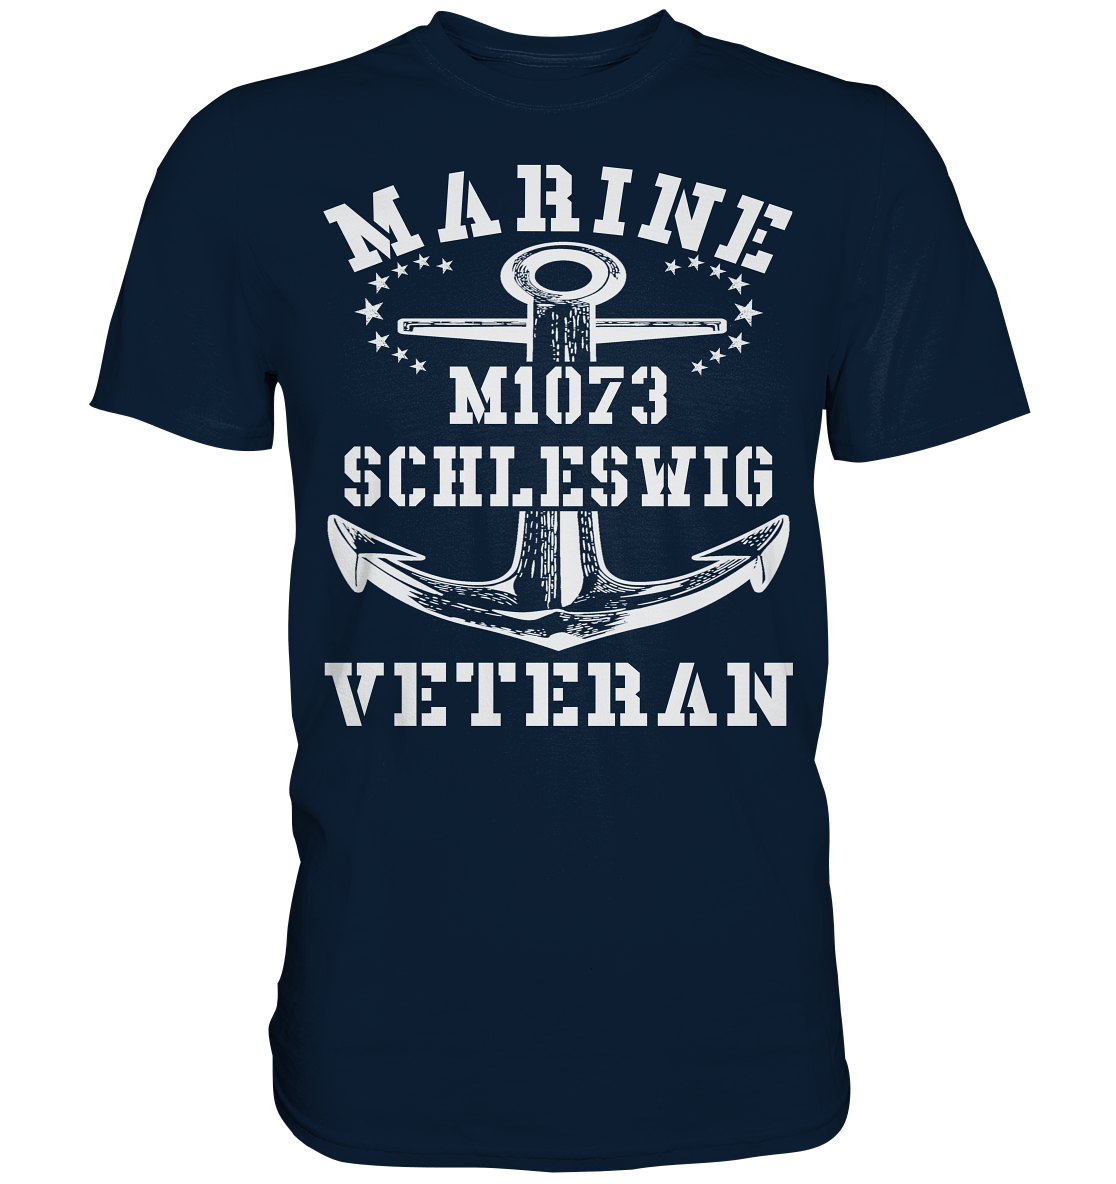 MARINE VETERAN M1073 SCHLESWIG - Premium Shirt